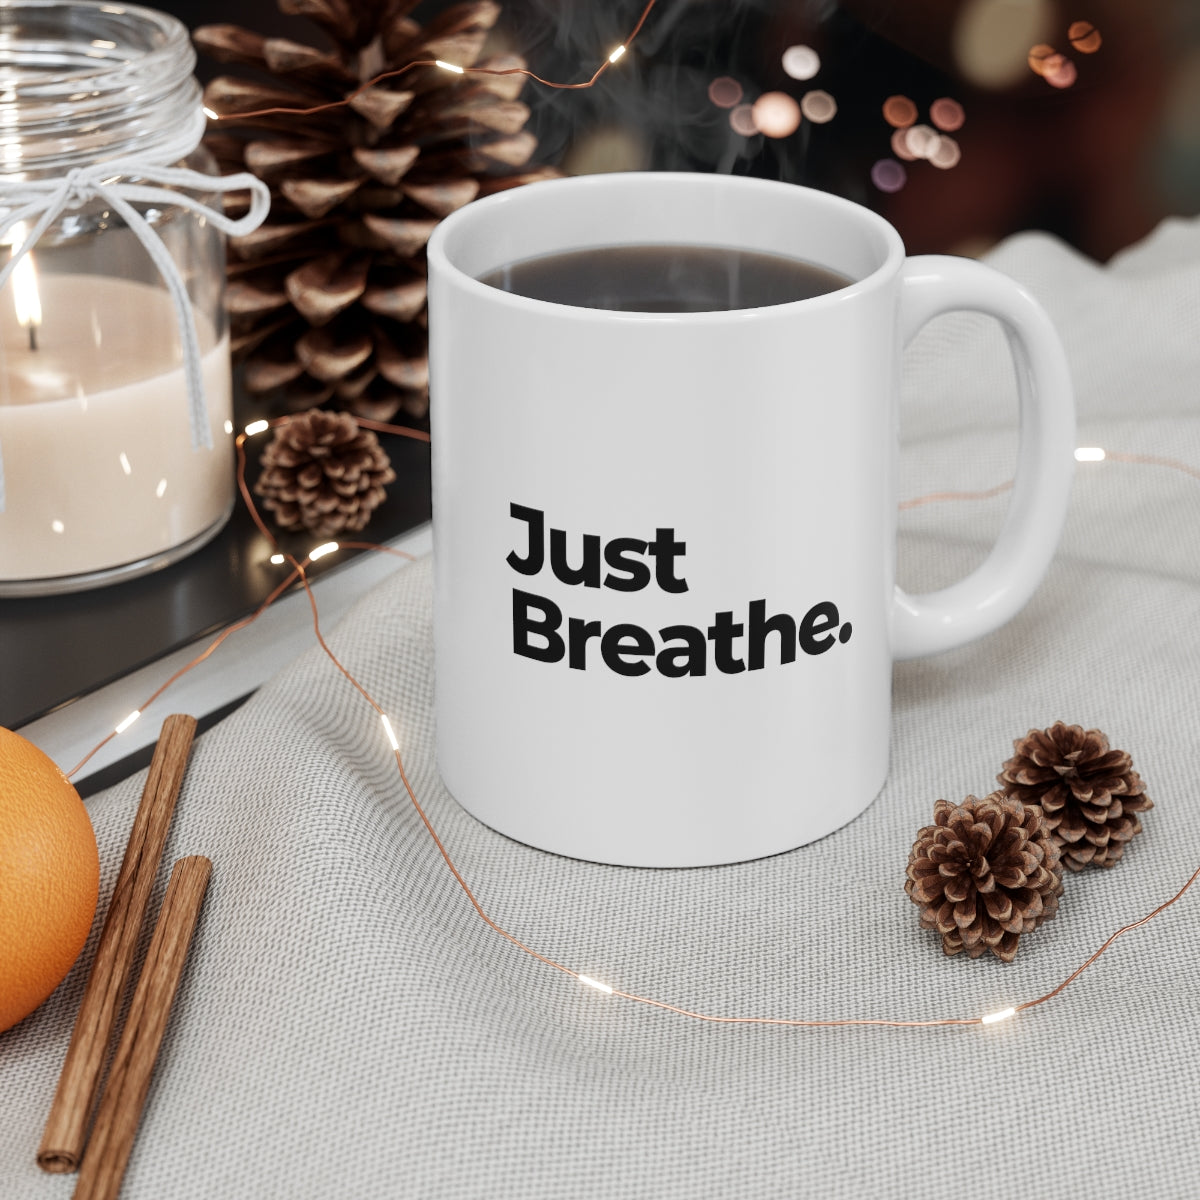 Just Breathe Mug Double Sided White Ceramic Coffee Tea Mug- Inspirational Birthday Gift, Motivational Mug, Daily Affirmation Mug, Self Care Gift